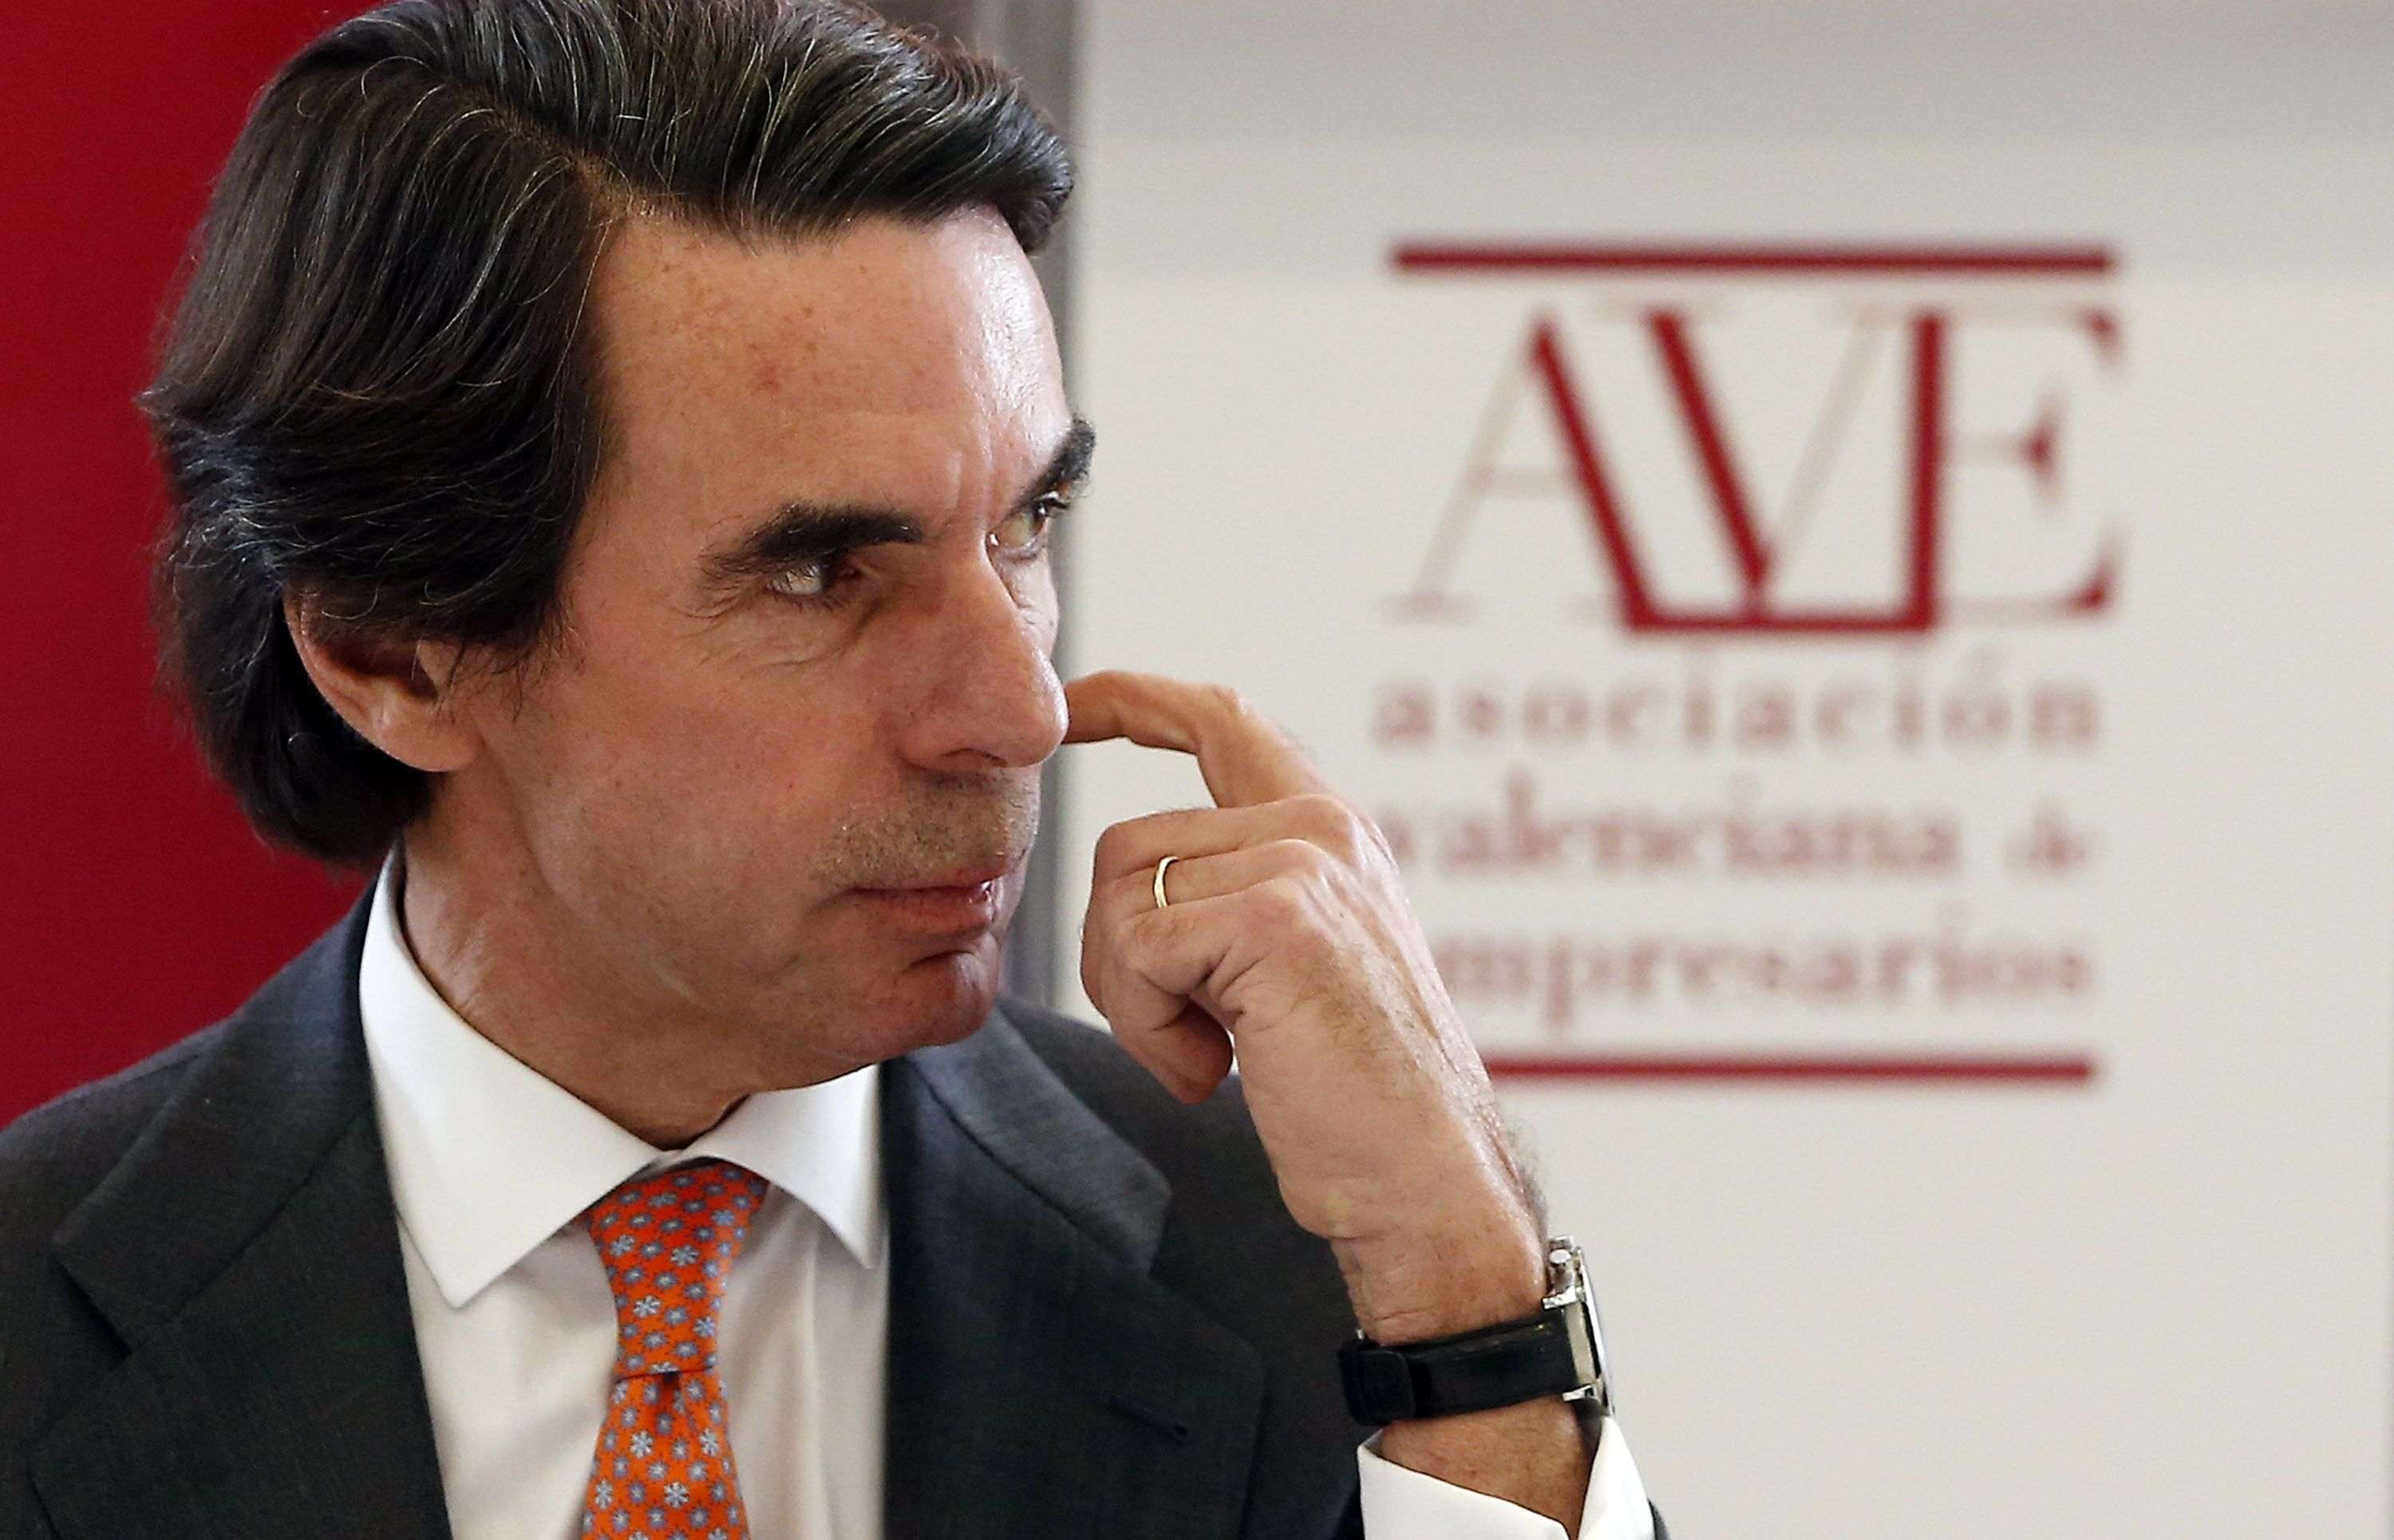 El PP descarta un partit d'Aznar: "Serà el nostre Pep Consciències"